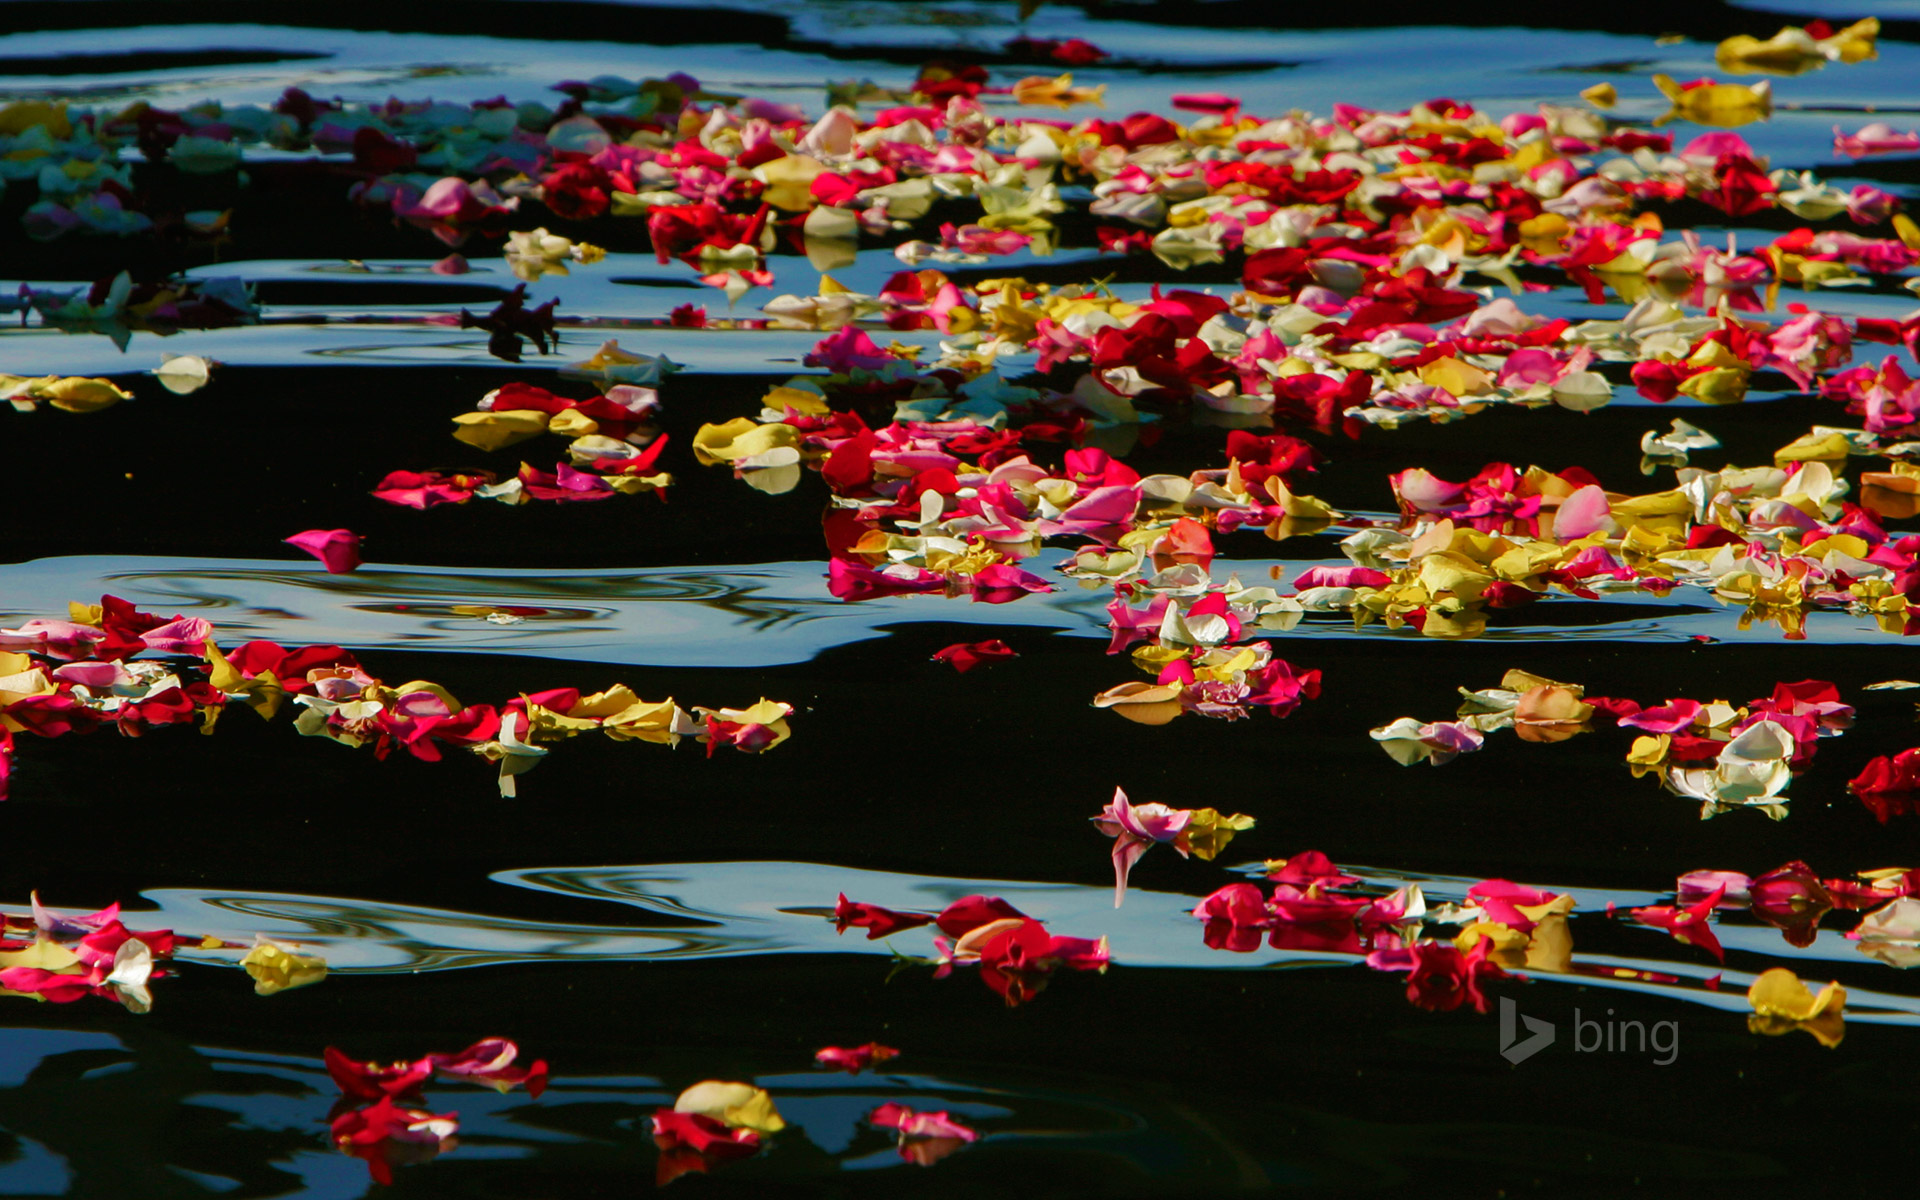 Rose petals in Oceanside Harbor, California